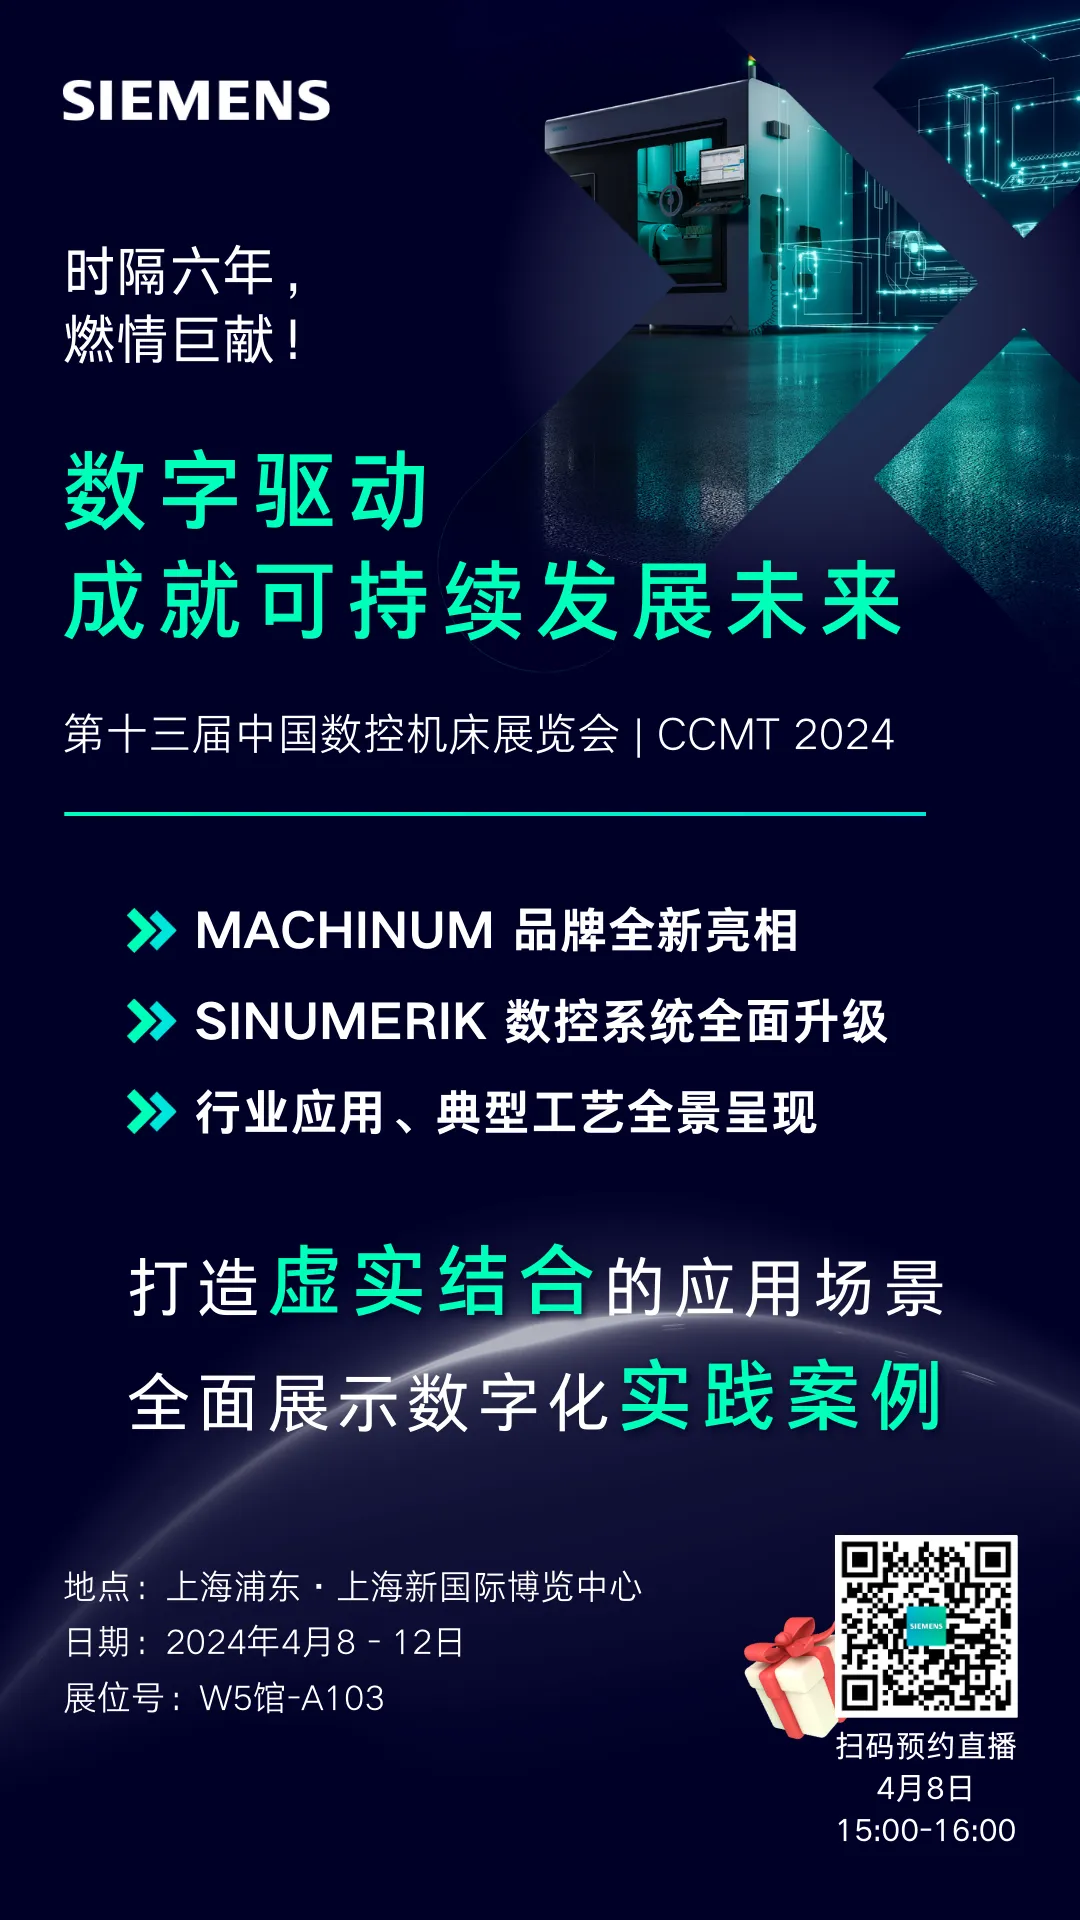 西门子与您相约第十三届中国数控机床展览会 CCMT 2024